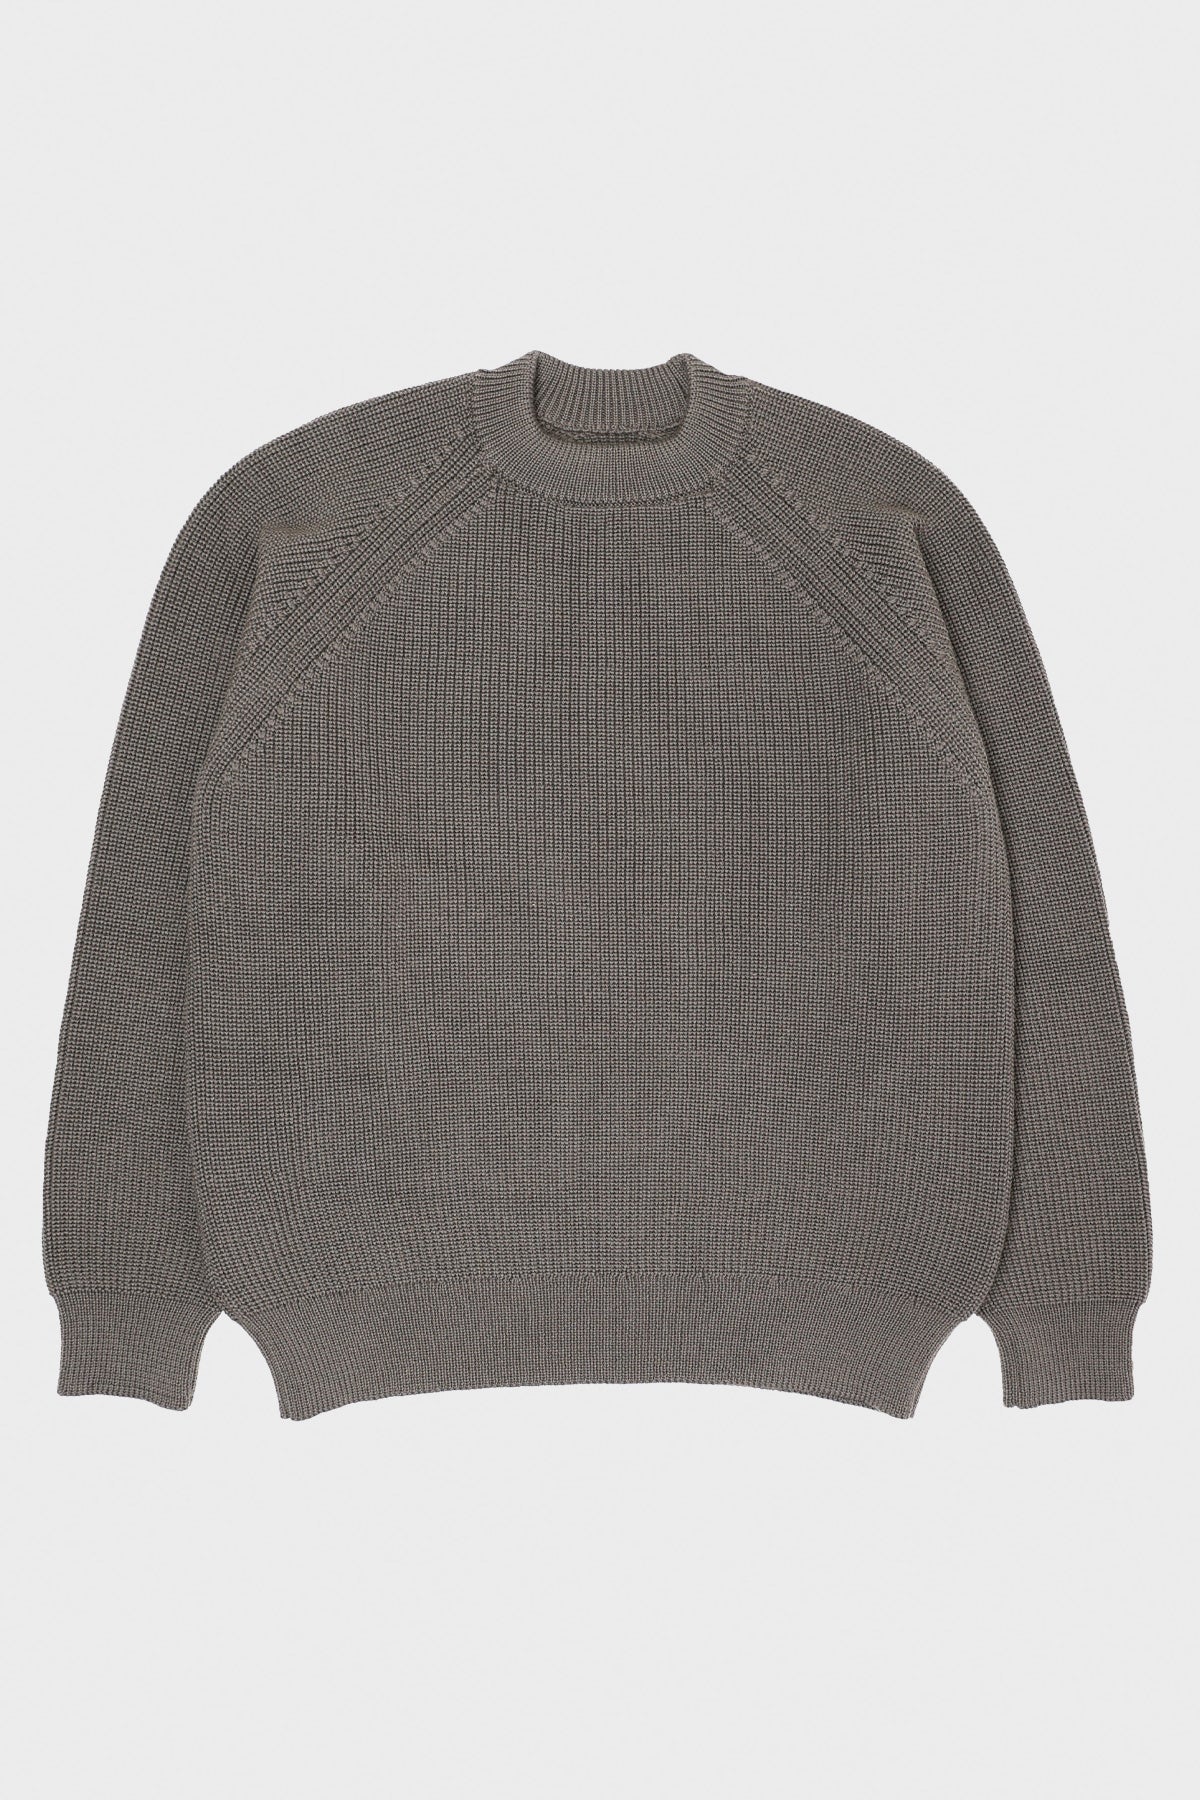 Plano Sweater - Warm Grey